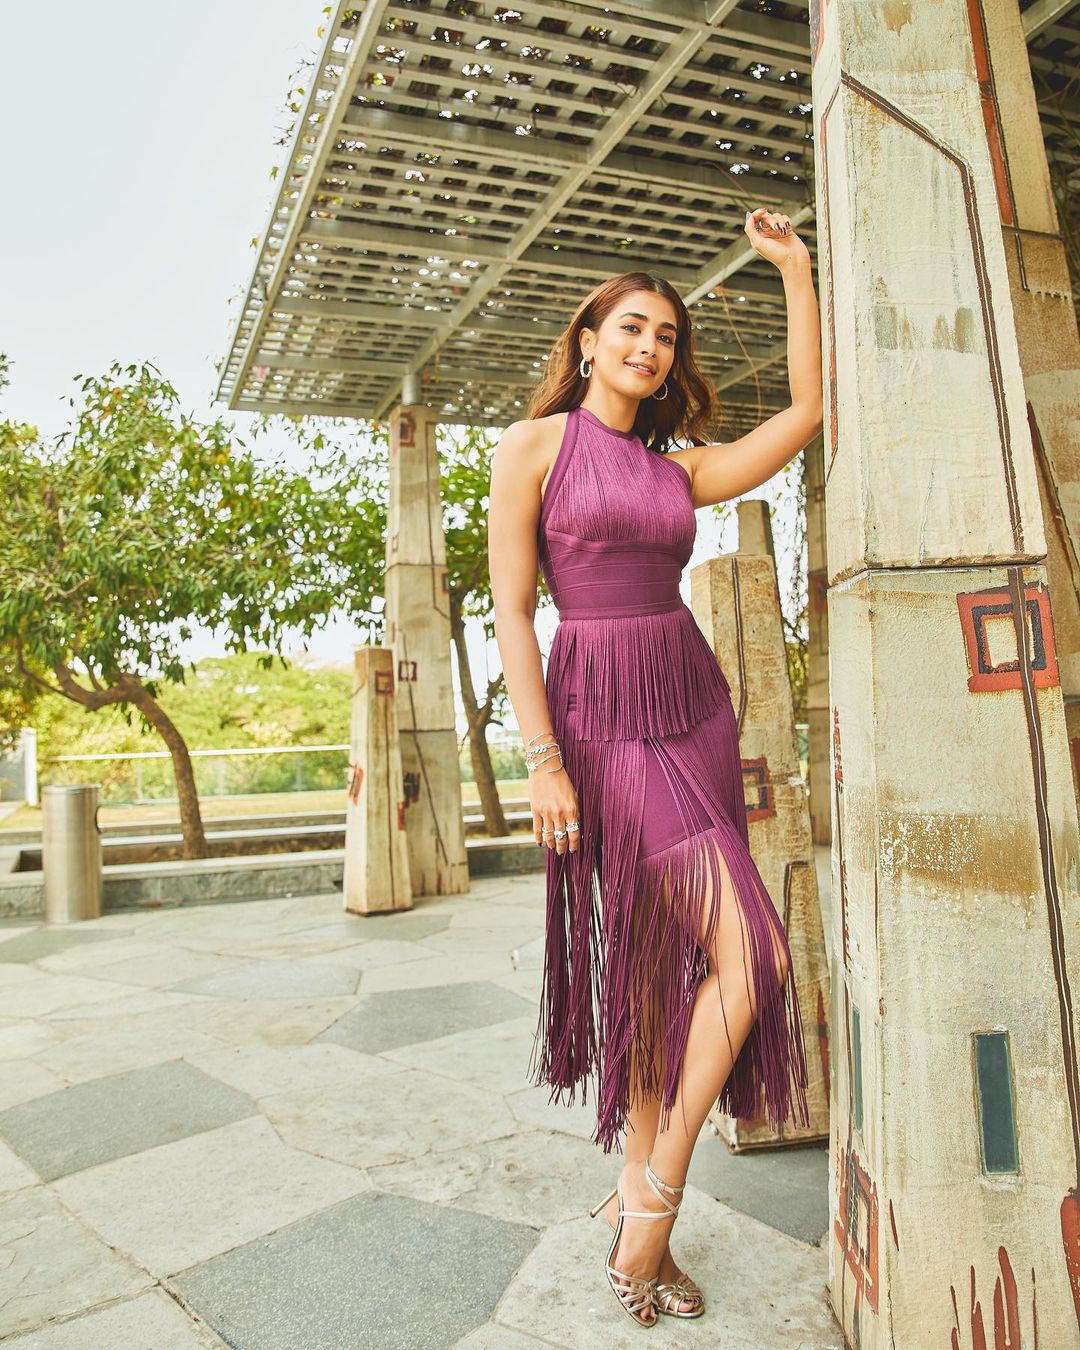 Pooja Hegde looks sassy in the purple tassel dress